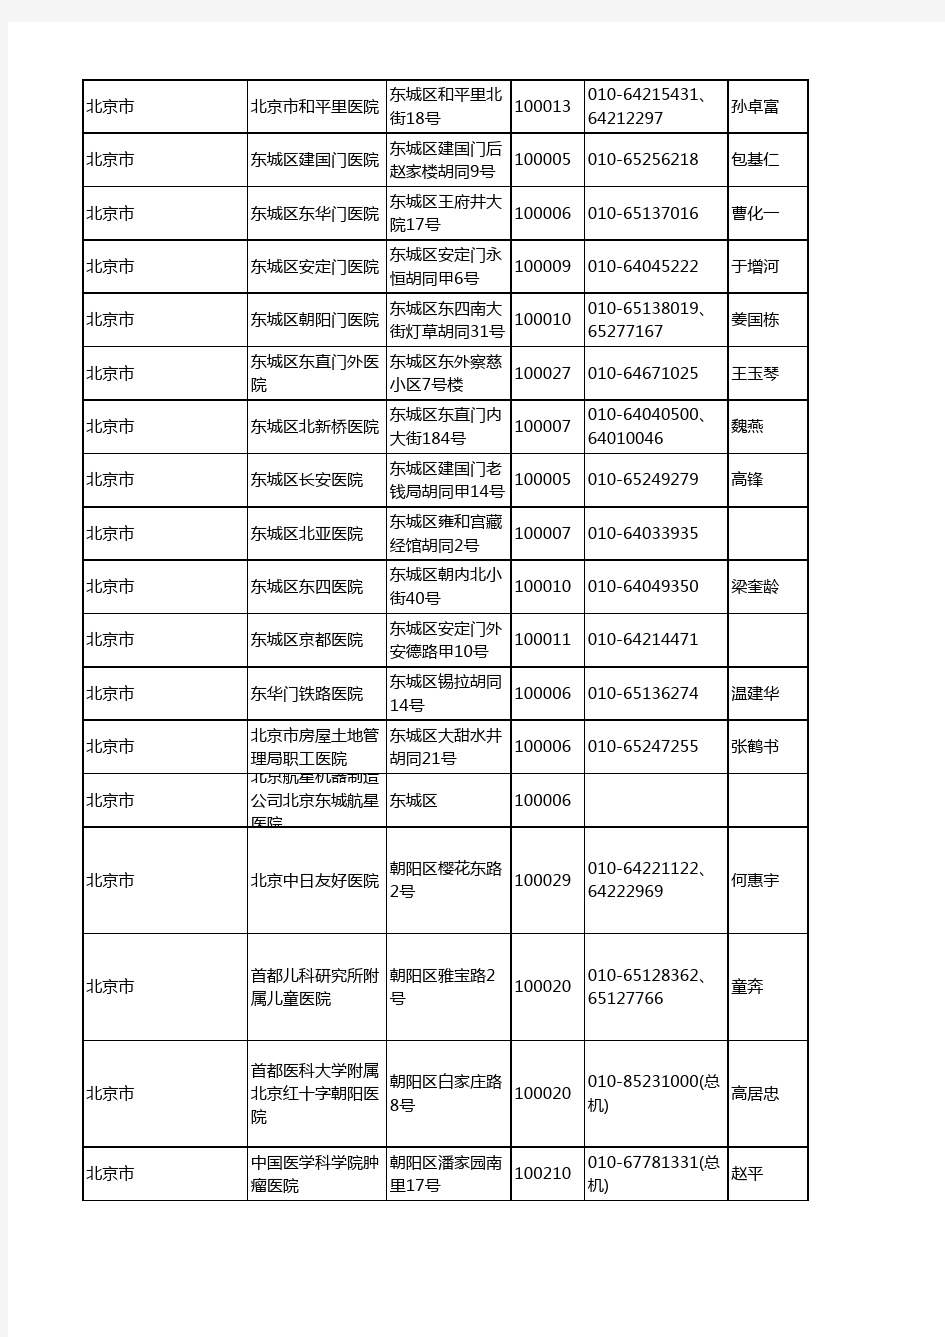 北京民营医院的名单&全国医院平均日门诊量-0701